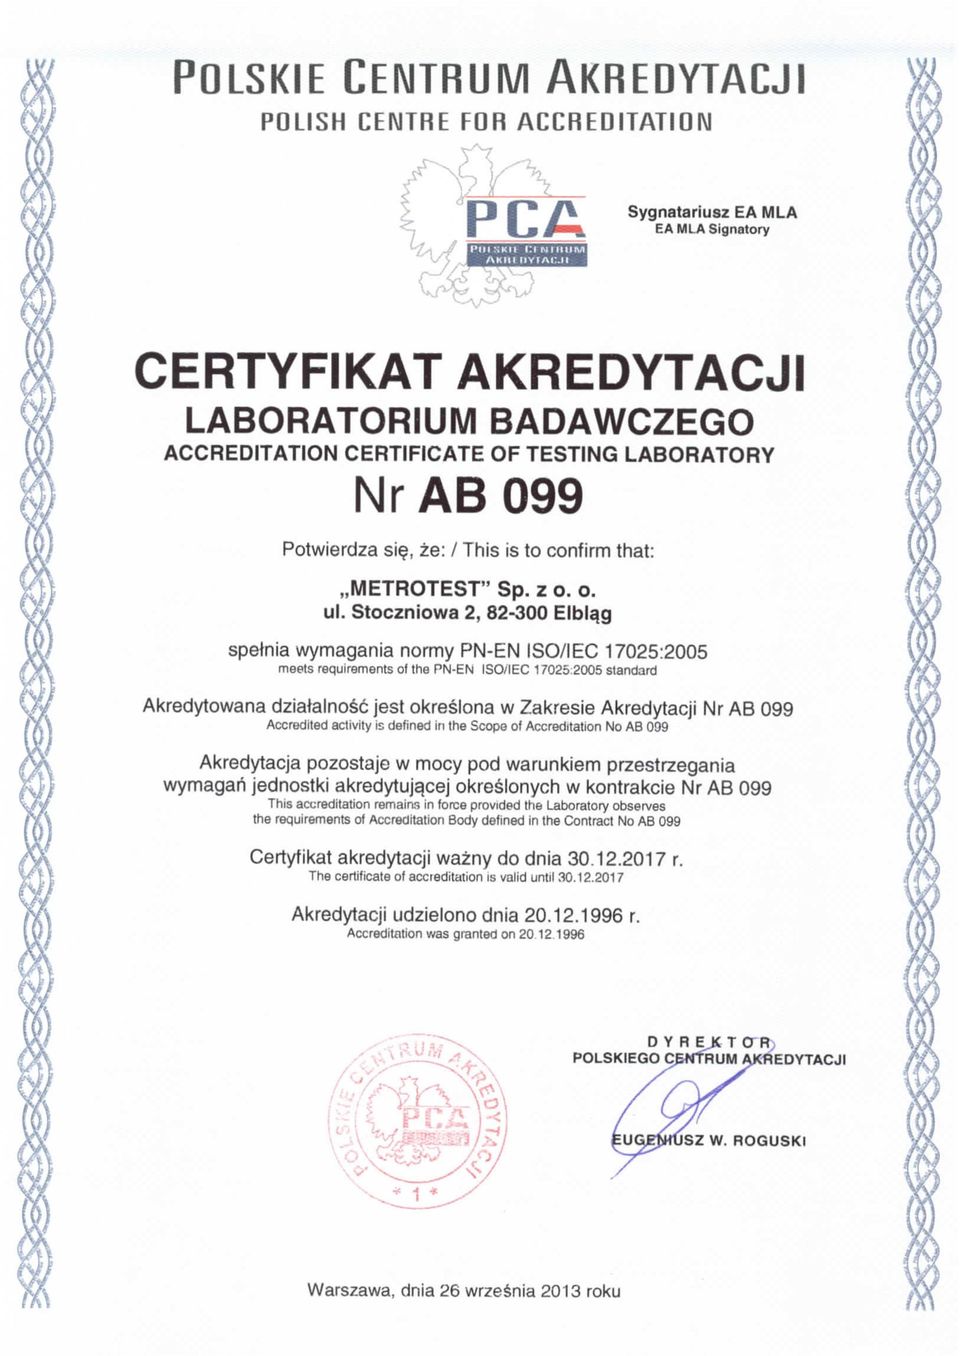 Stoczniowa 2, 82-300 Elblag speinia wymagania normy PN-EN ISO/I EC 17025:2005 meets requirements of the PN-EN ISO/IEC 17025:2005 standard Akredytowana dziatalnosc jest okreslona w Zakresie